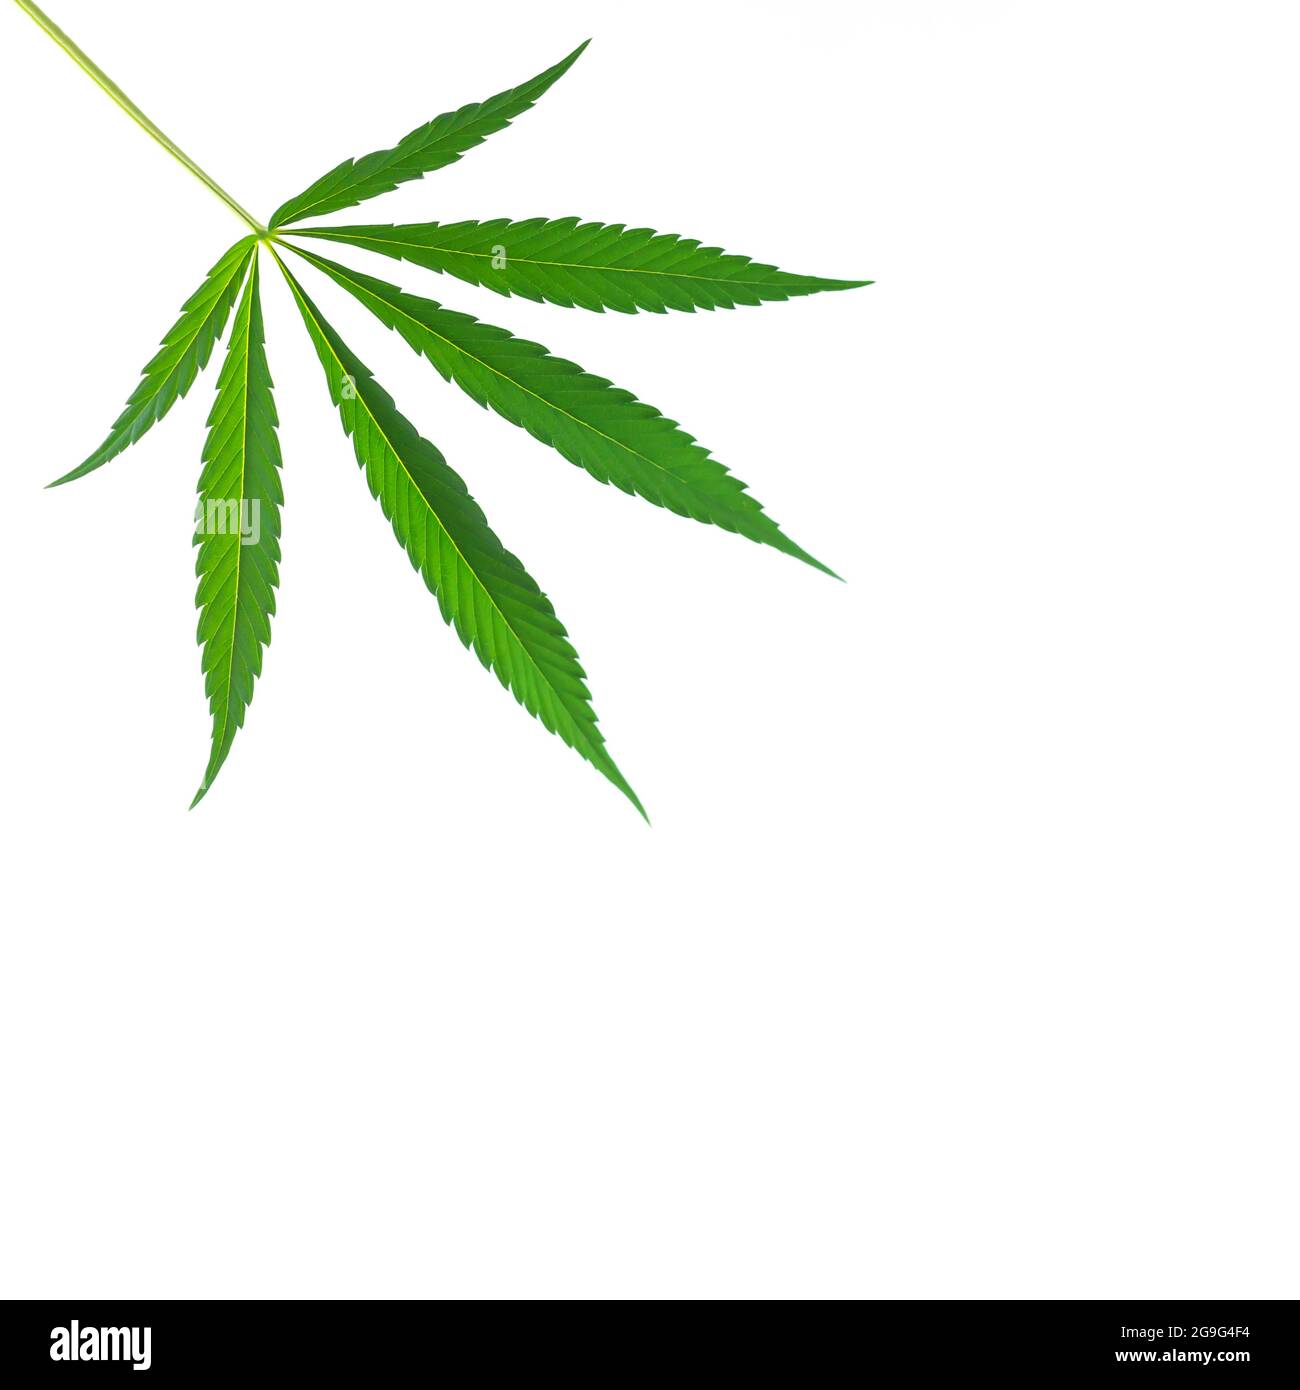 Hemp or cannabis single leaf isolated on white background Stock Photo